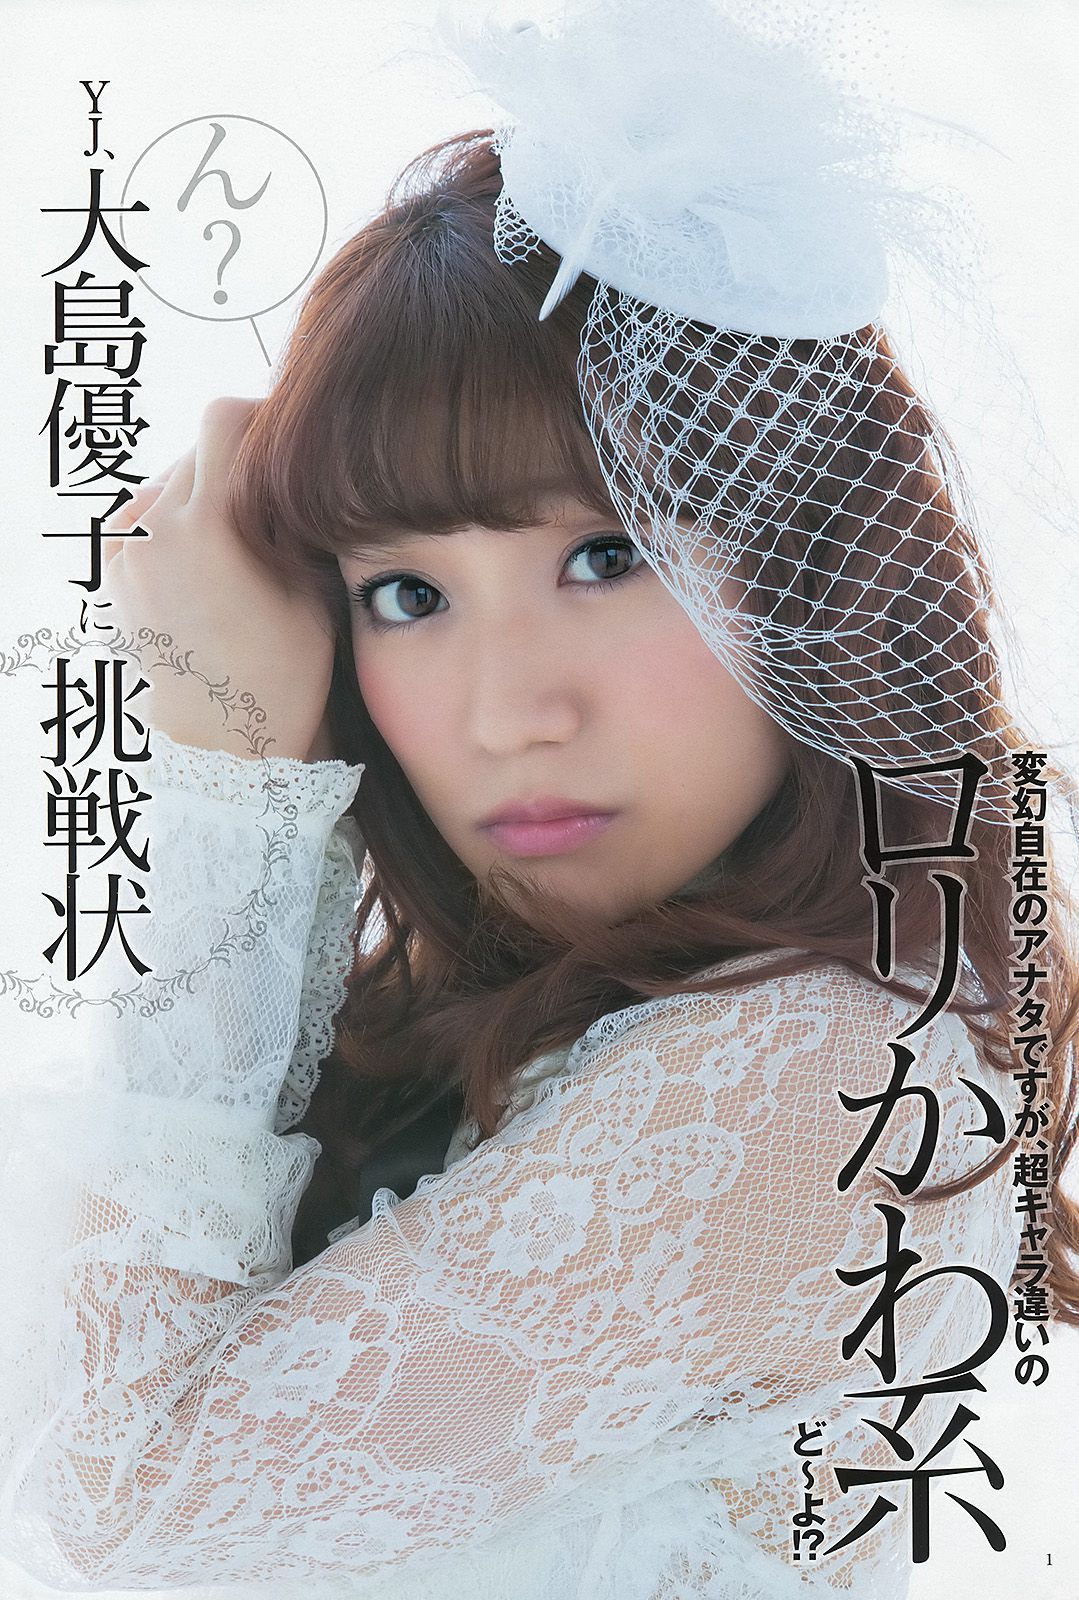 大島優子 乃木坂46 AKB48 ウェイティングガールズ [Weekly Young Jump] 2012年No.40 写真杂志